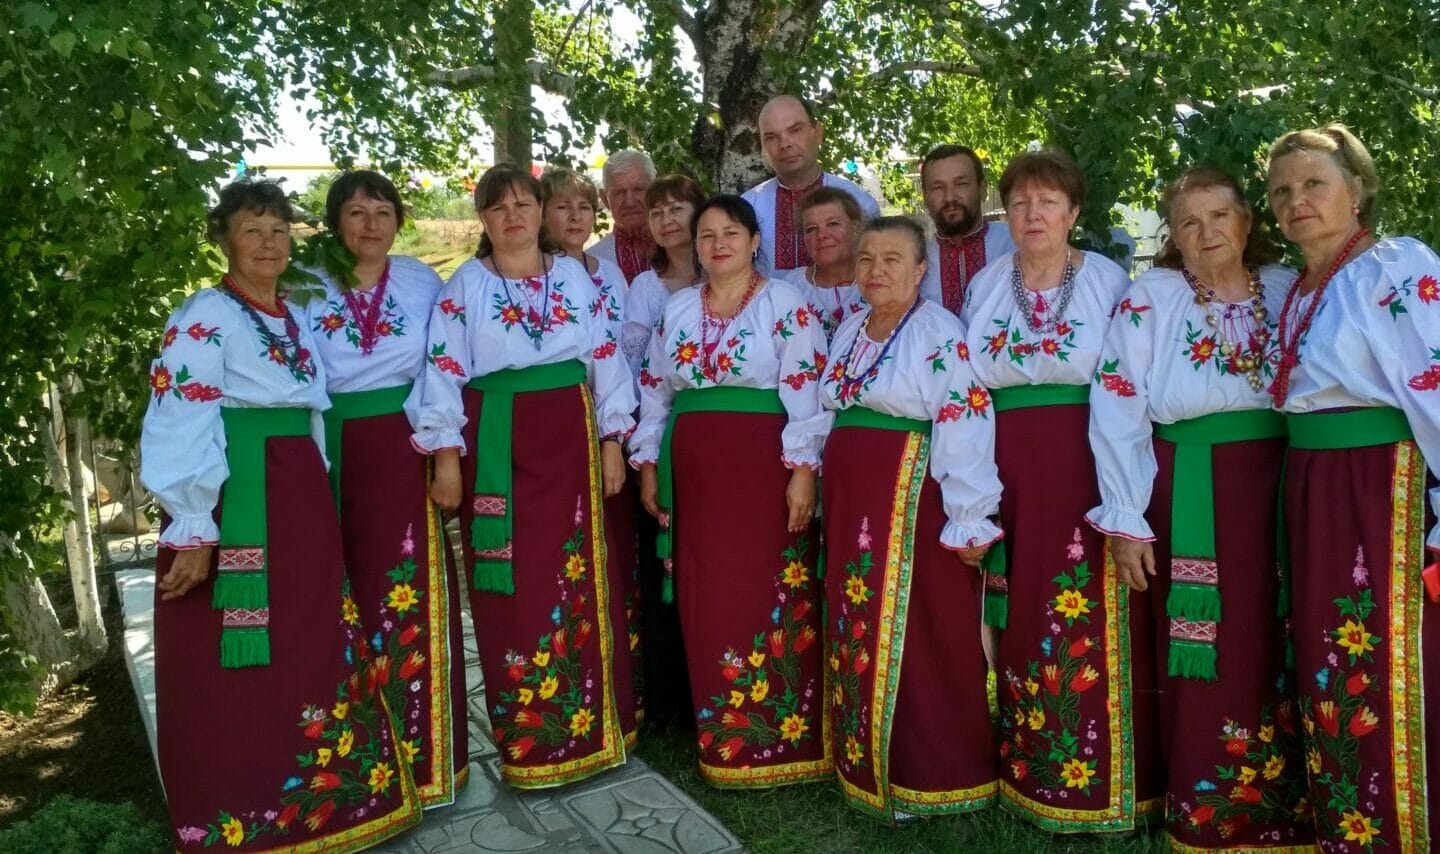 Velykoploske People's Choir